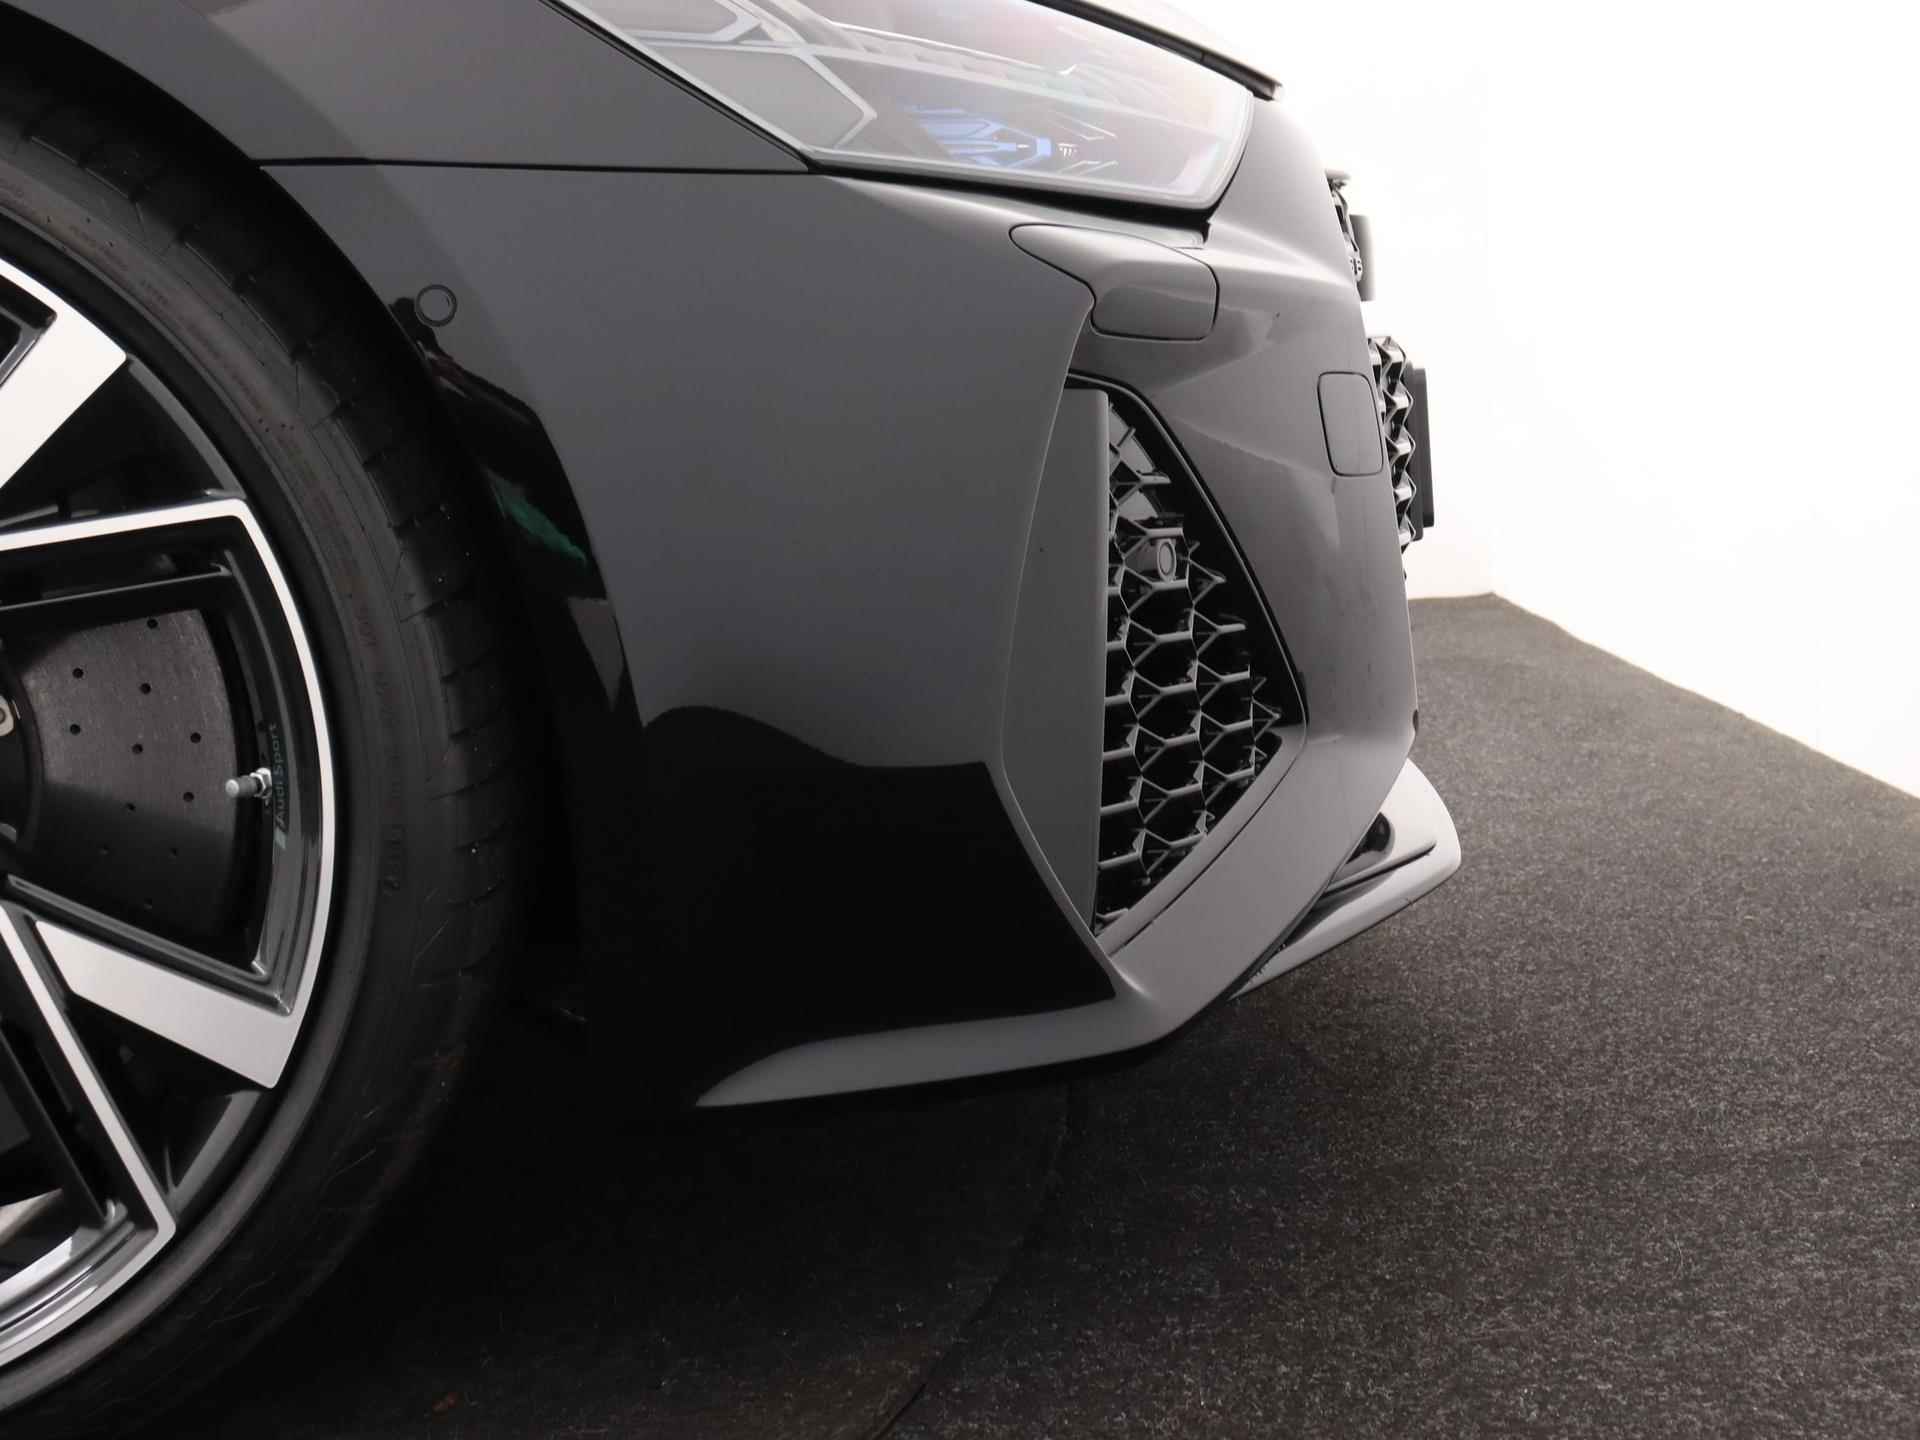 Audi RS6 TFSI quattro 600 PK | Head-up display | Bang & Olufsen Soundsystem | 22 inch lm velgen | RS Dynamic Pakket Plus | RS Design pakket Rood |Optiekpakket Zwart Plus | Panorama dak | RS Sportuitlaat | Keramische remschijven Rood | RS Sportonderstel Plus | Servosluiting deuren | Nu € 36.129,- ACTIEKORTING! | DIRECT LEVERBAAR! | NIEUWE AUTO! | - 29/35